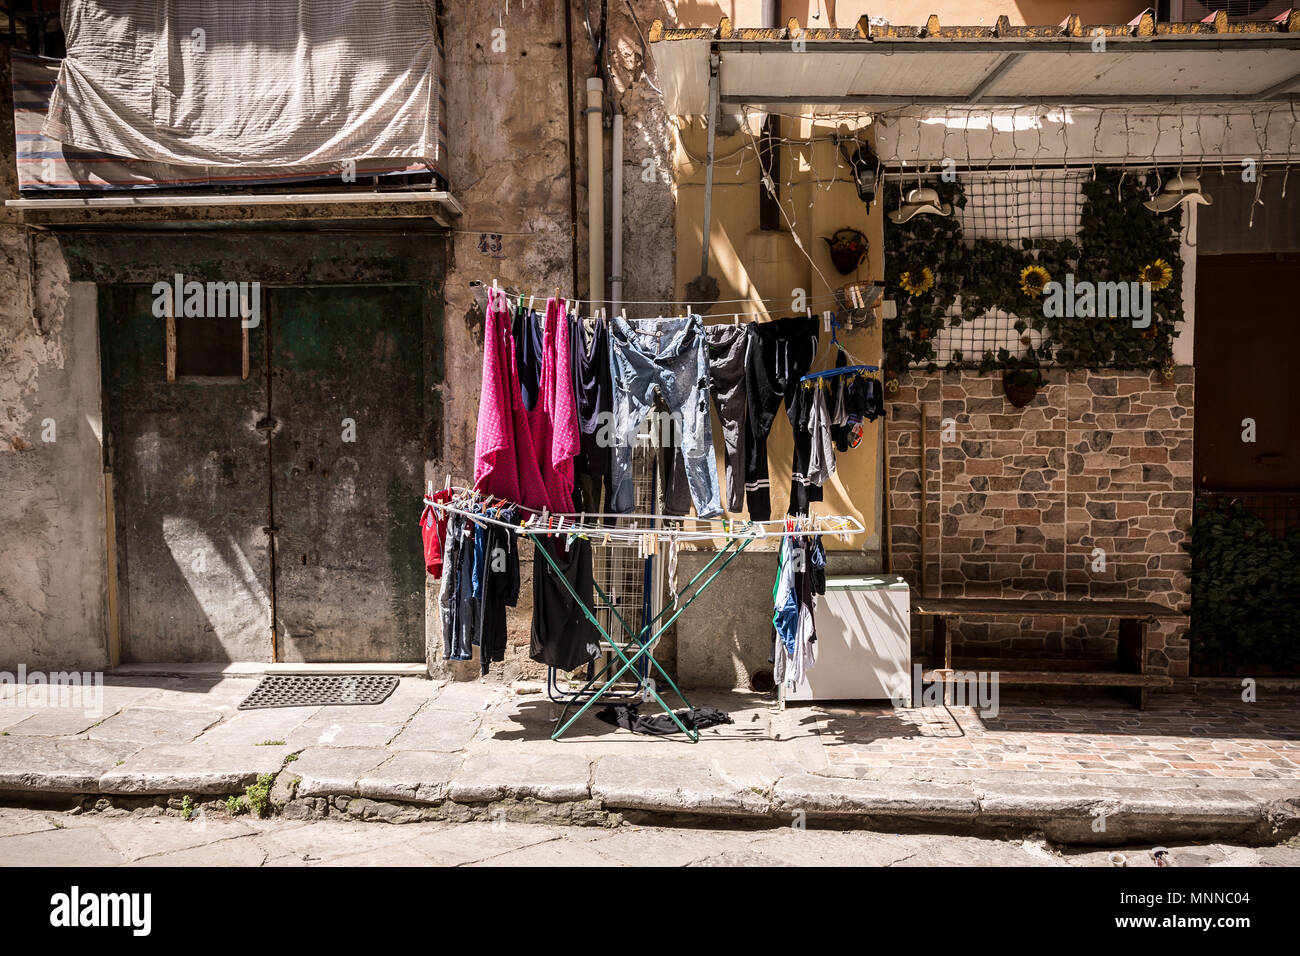 Waschen ist das Trocknen in der Sonne auf sizilianische Straße. Stockfoto